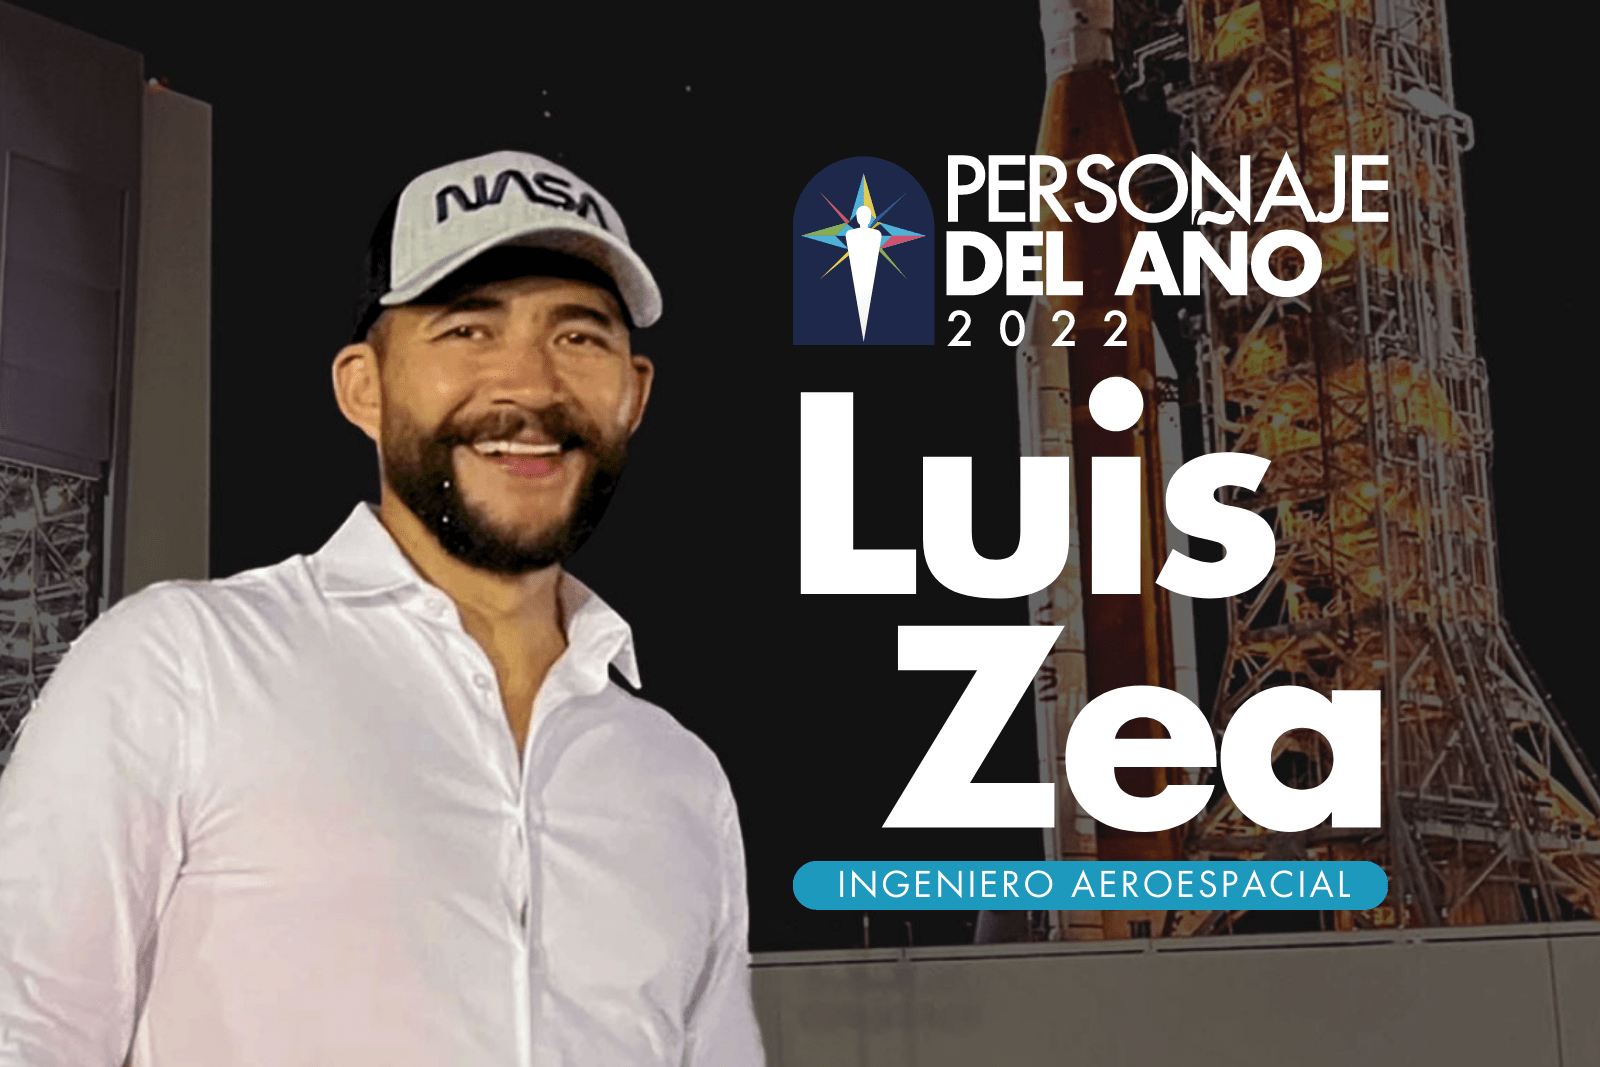 Luis Zea es el Personaje del Año 2022 de Prensa Libre.